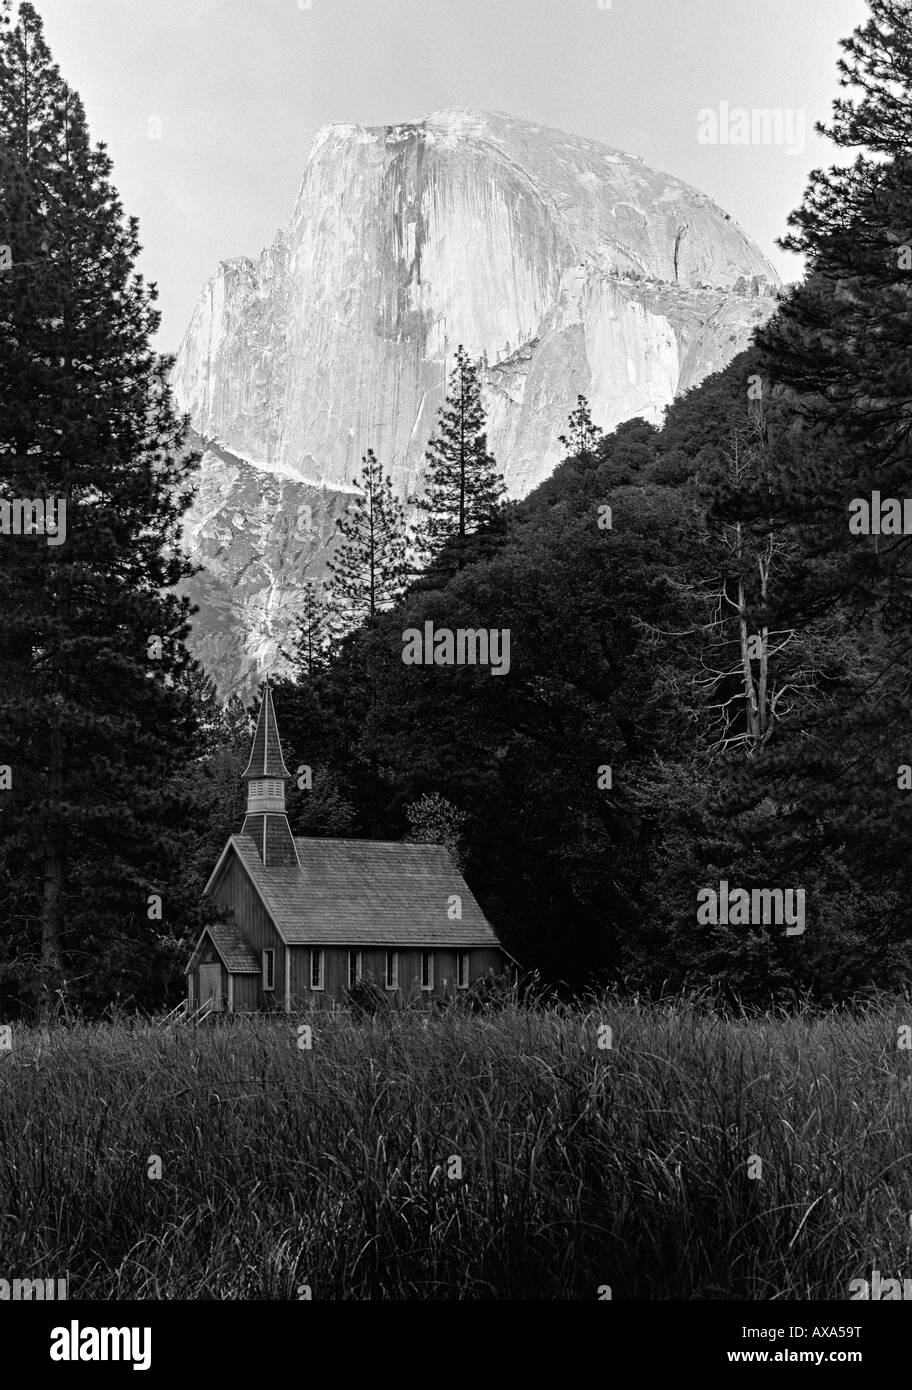 Yosemite National Park église avec demi dôme mountain peak arrière-plan - Californie, États-Unis Banque D'Images